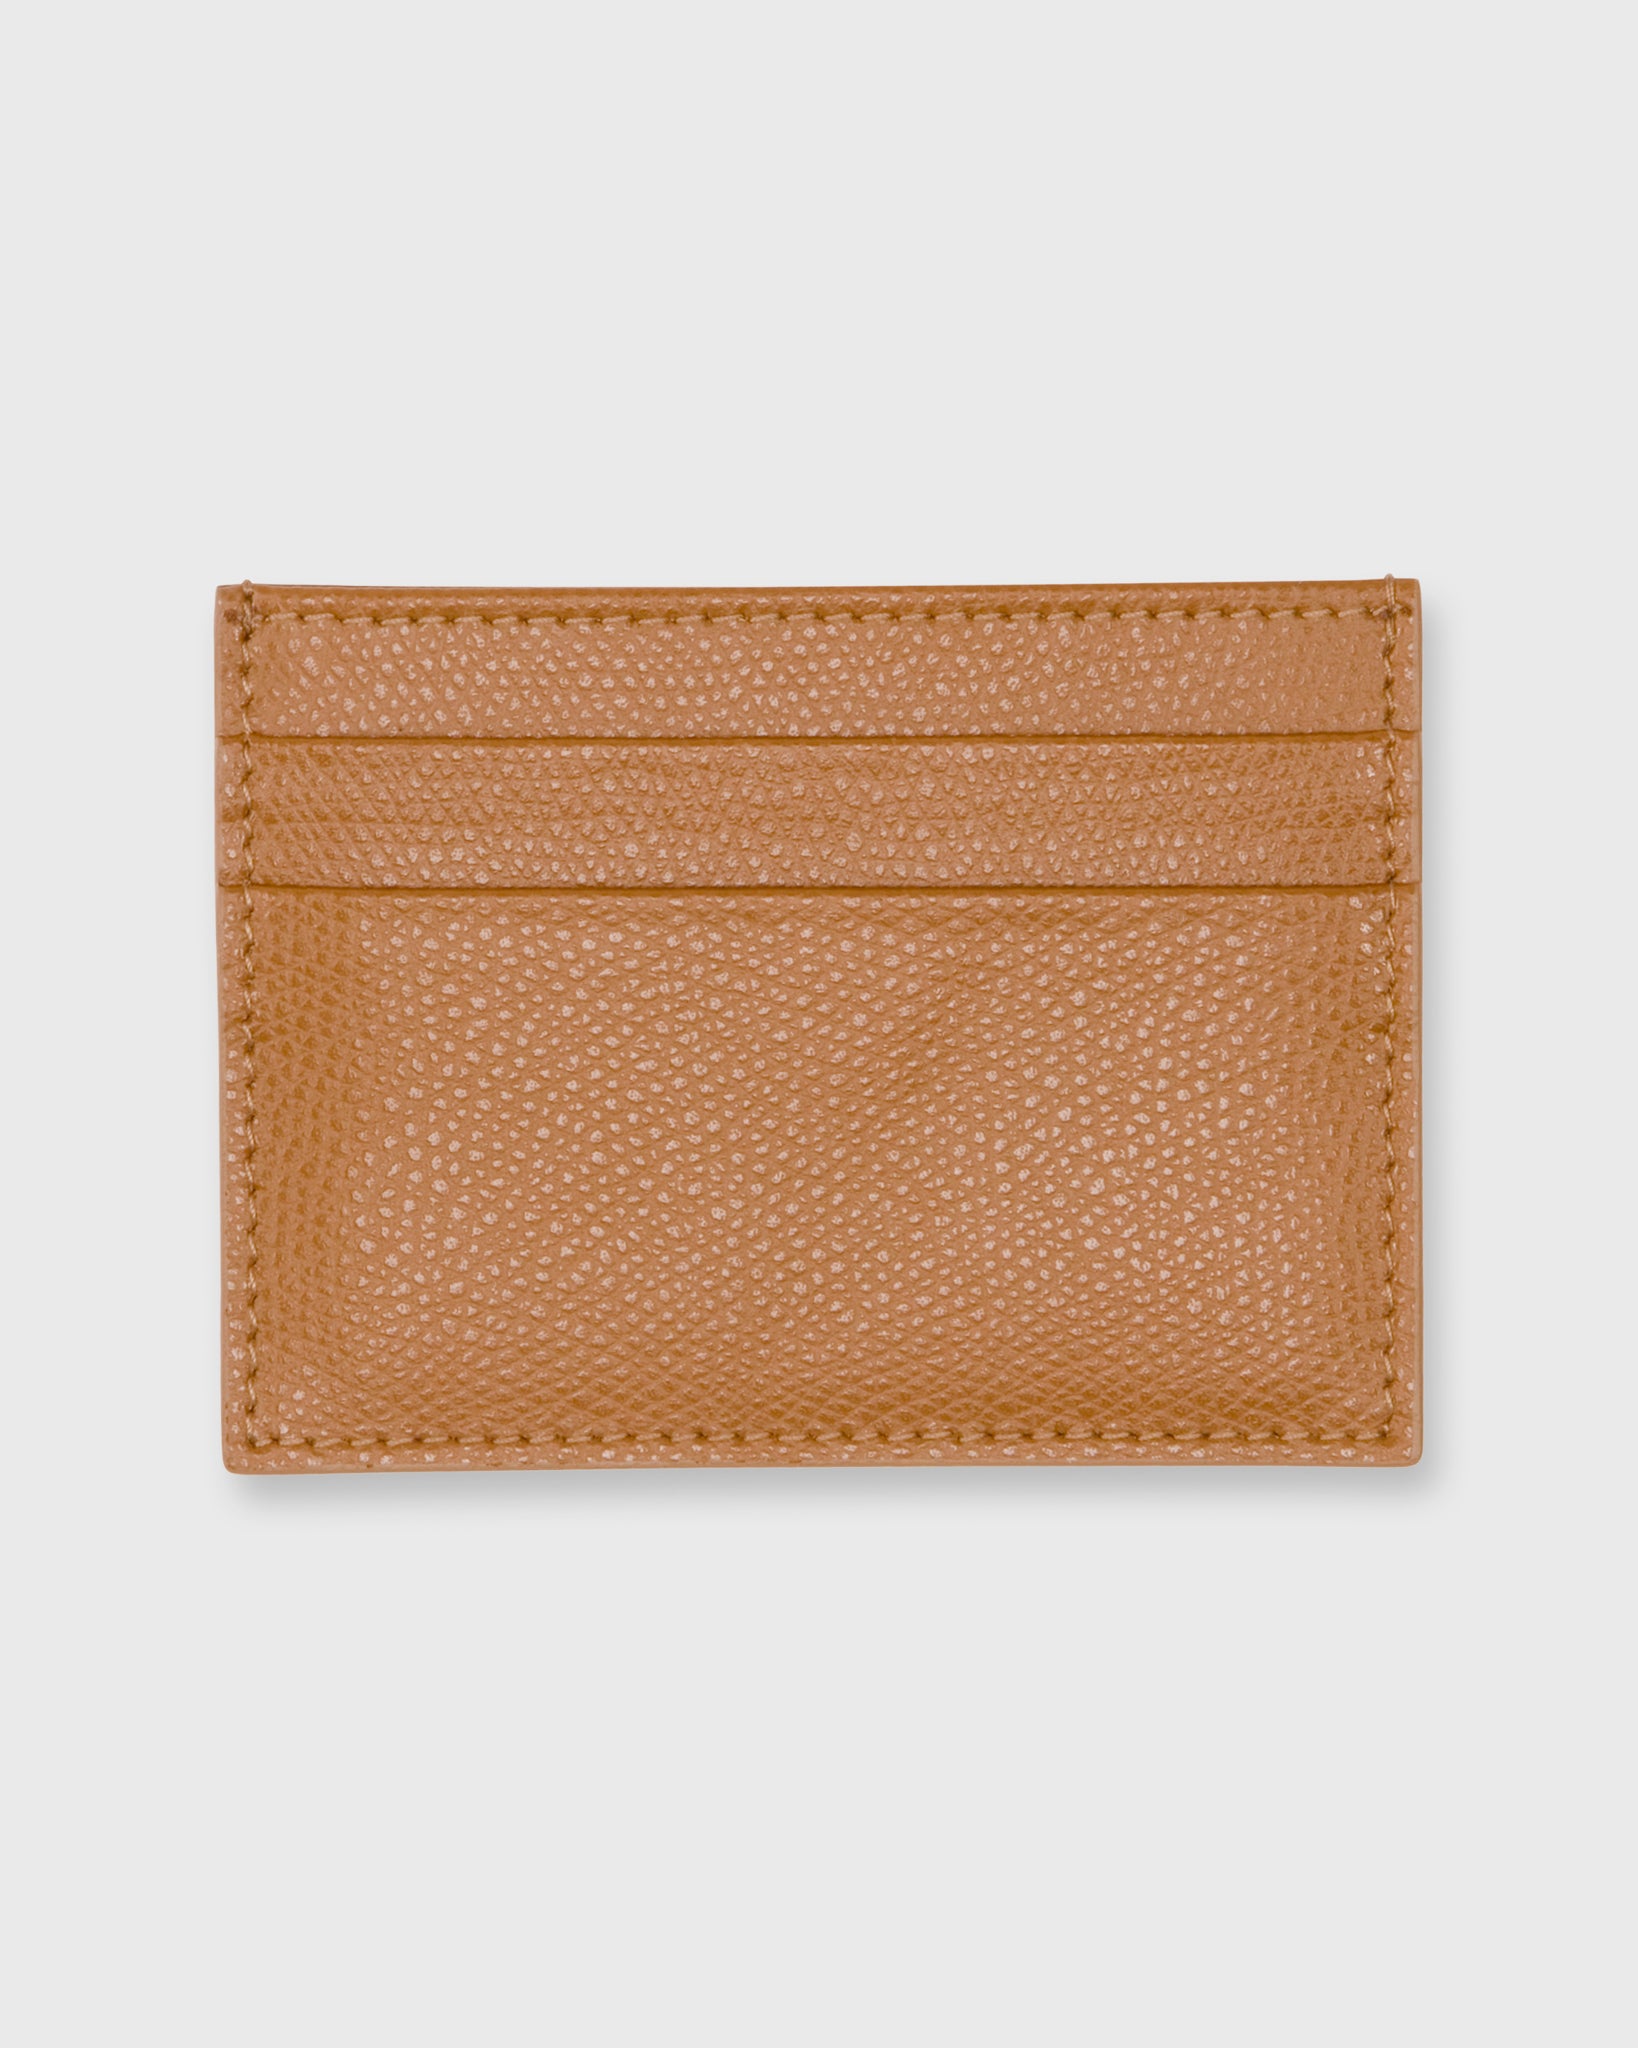 Card Holder in English Tan Leather | Shop Mashburn